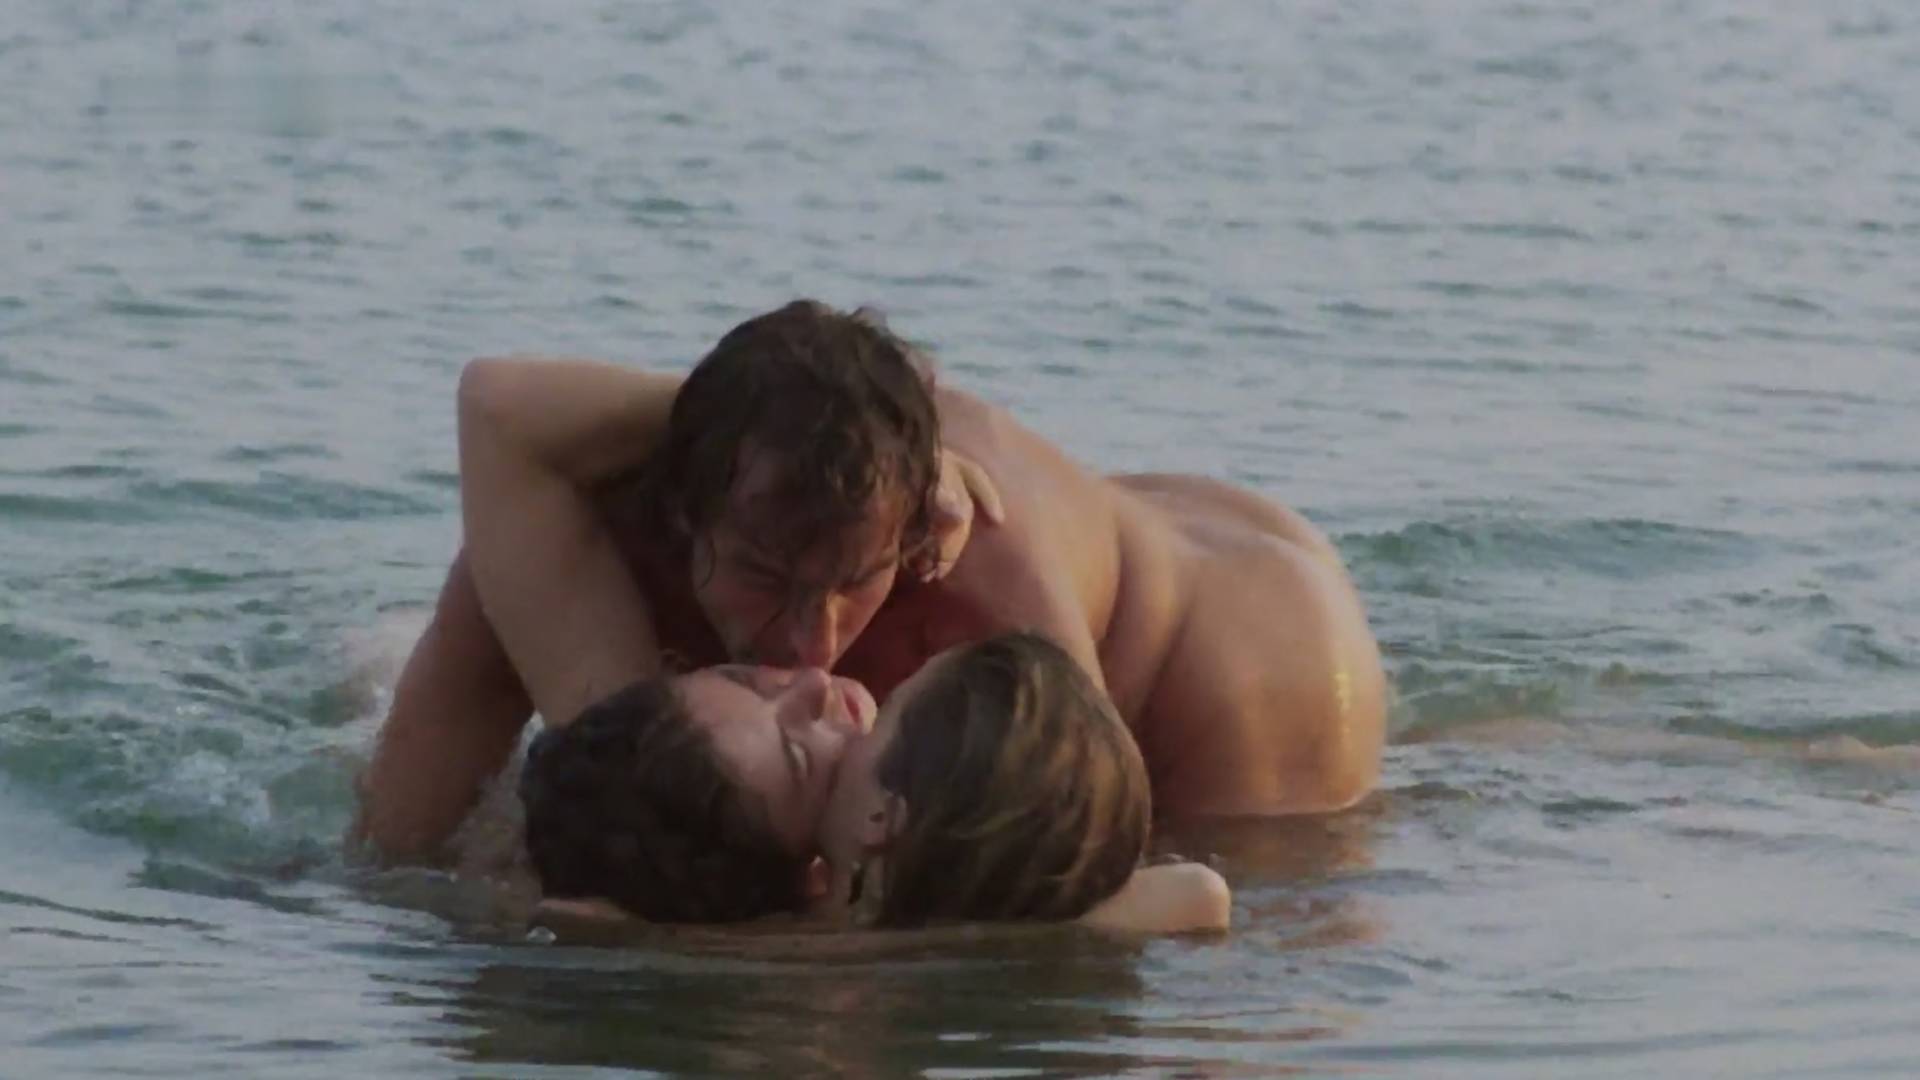 Domaći filmovi čije su erotske scene puno provokativnije od onih u Netfliksovom "365 dana"